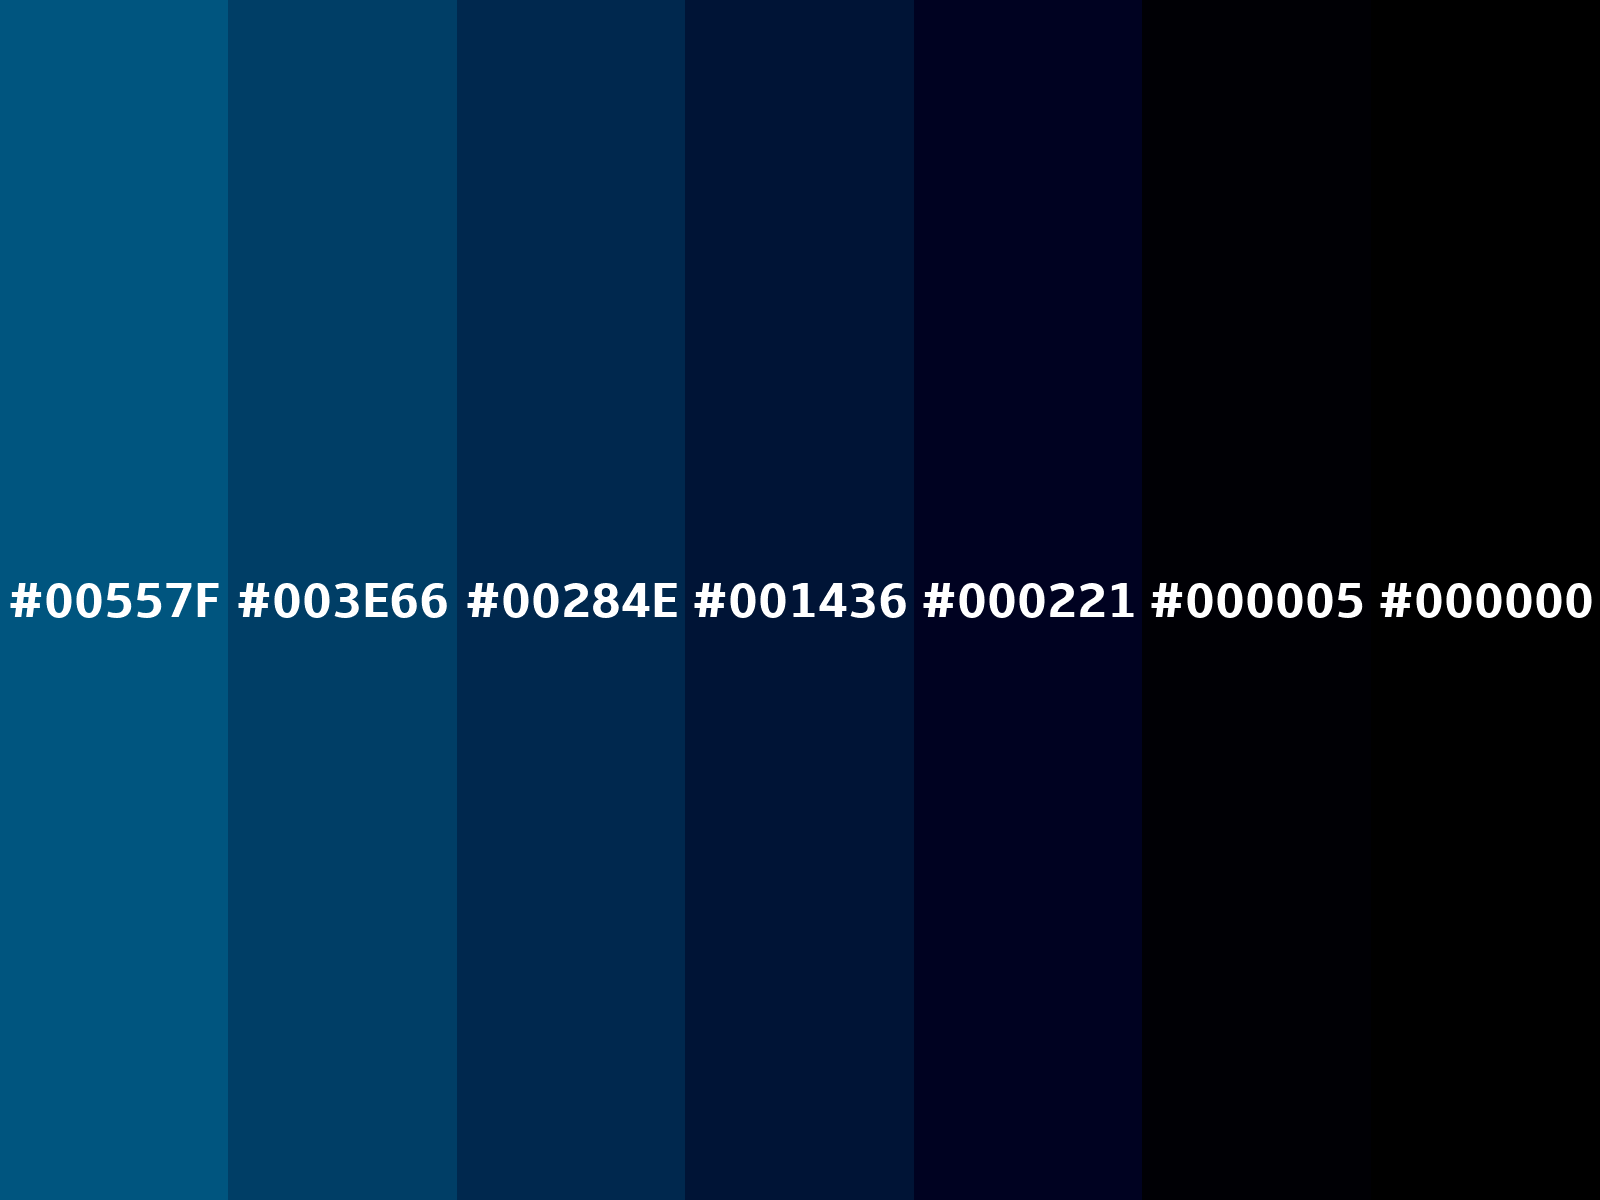 Alba Azul Celeste Fusión - #007da6 color code hexadecimal - 67bg 19/394